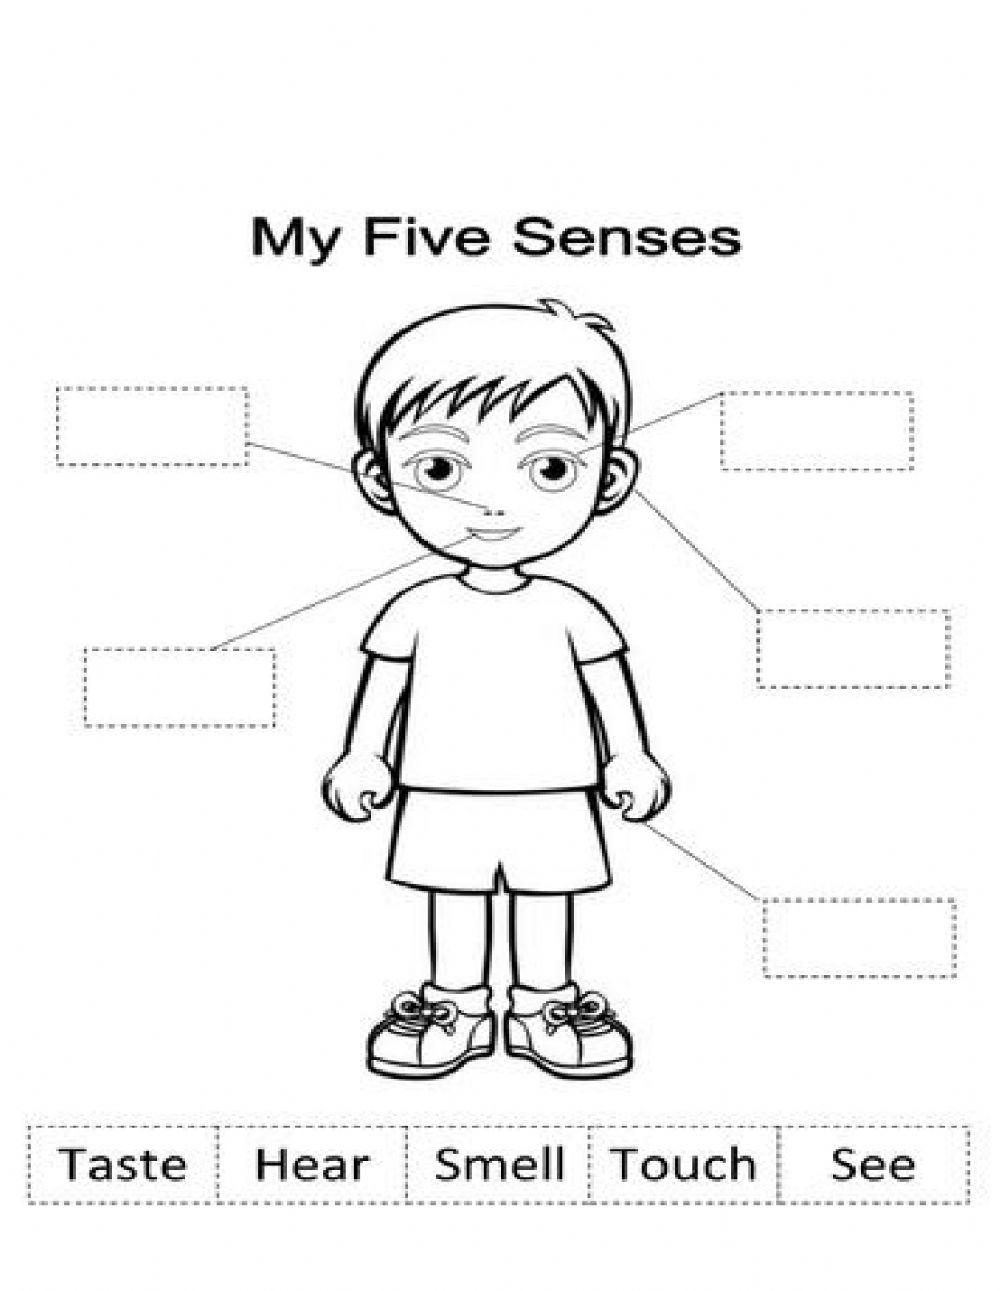 5 senses